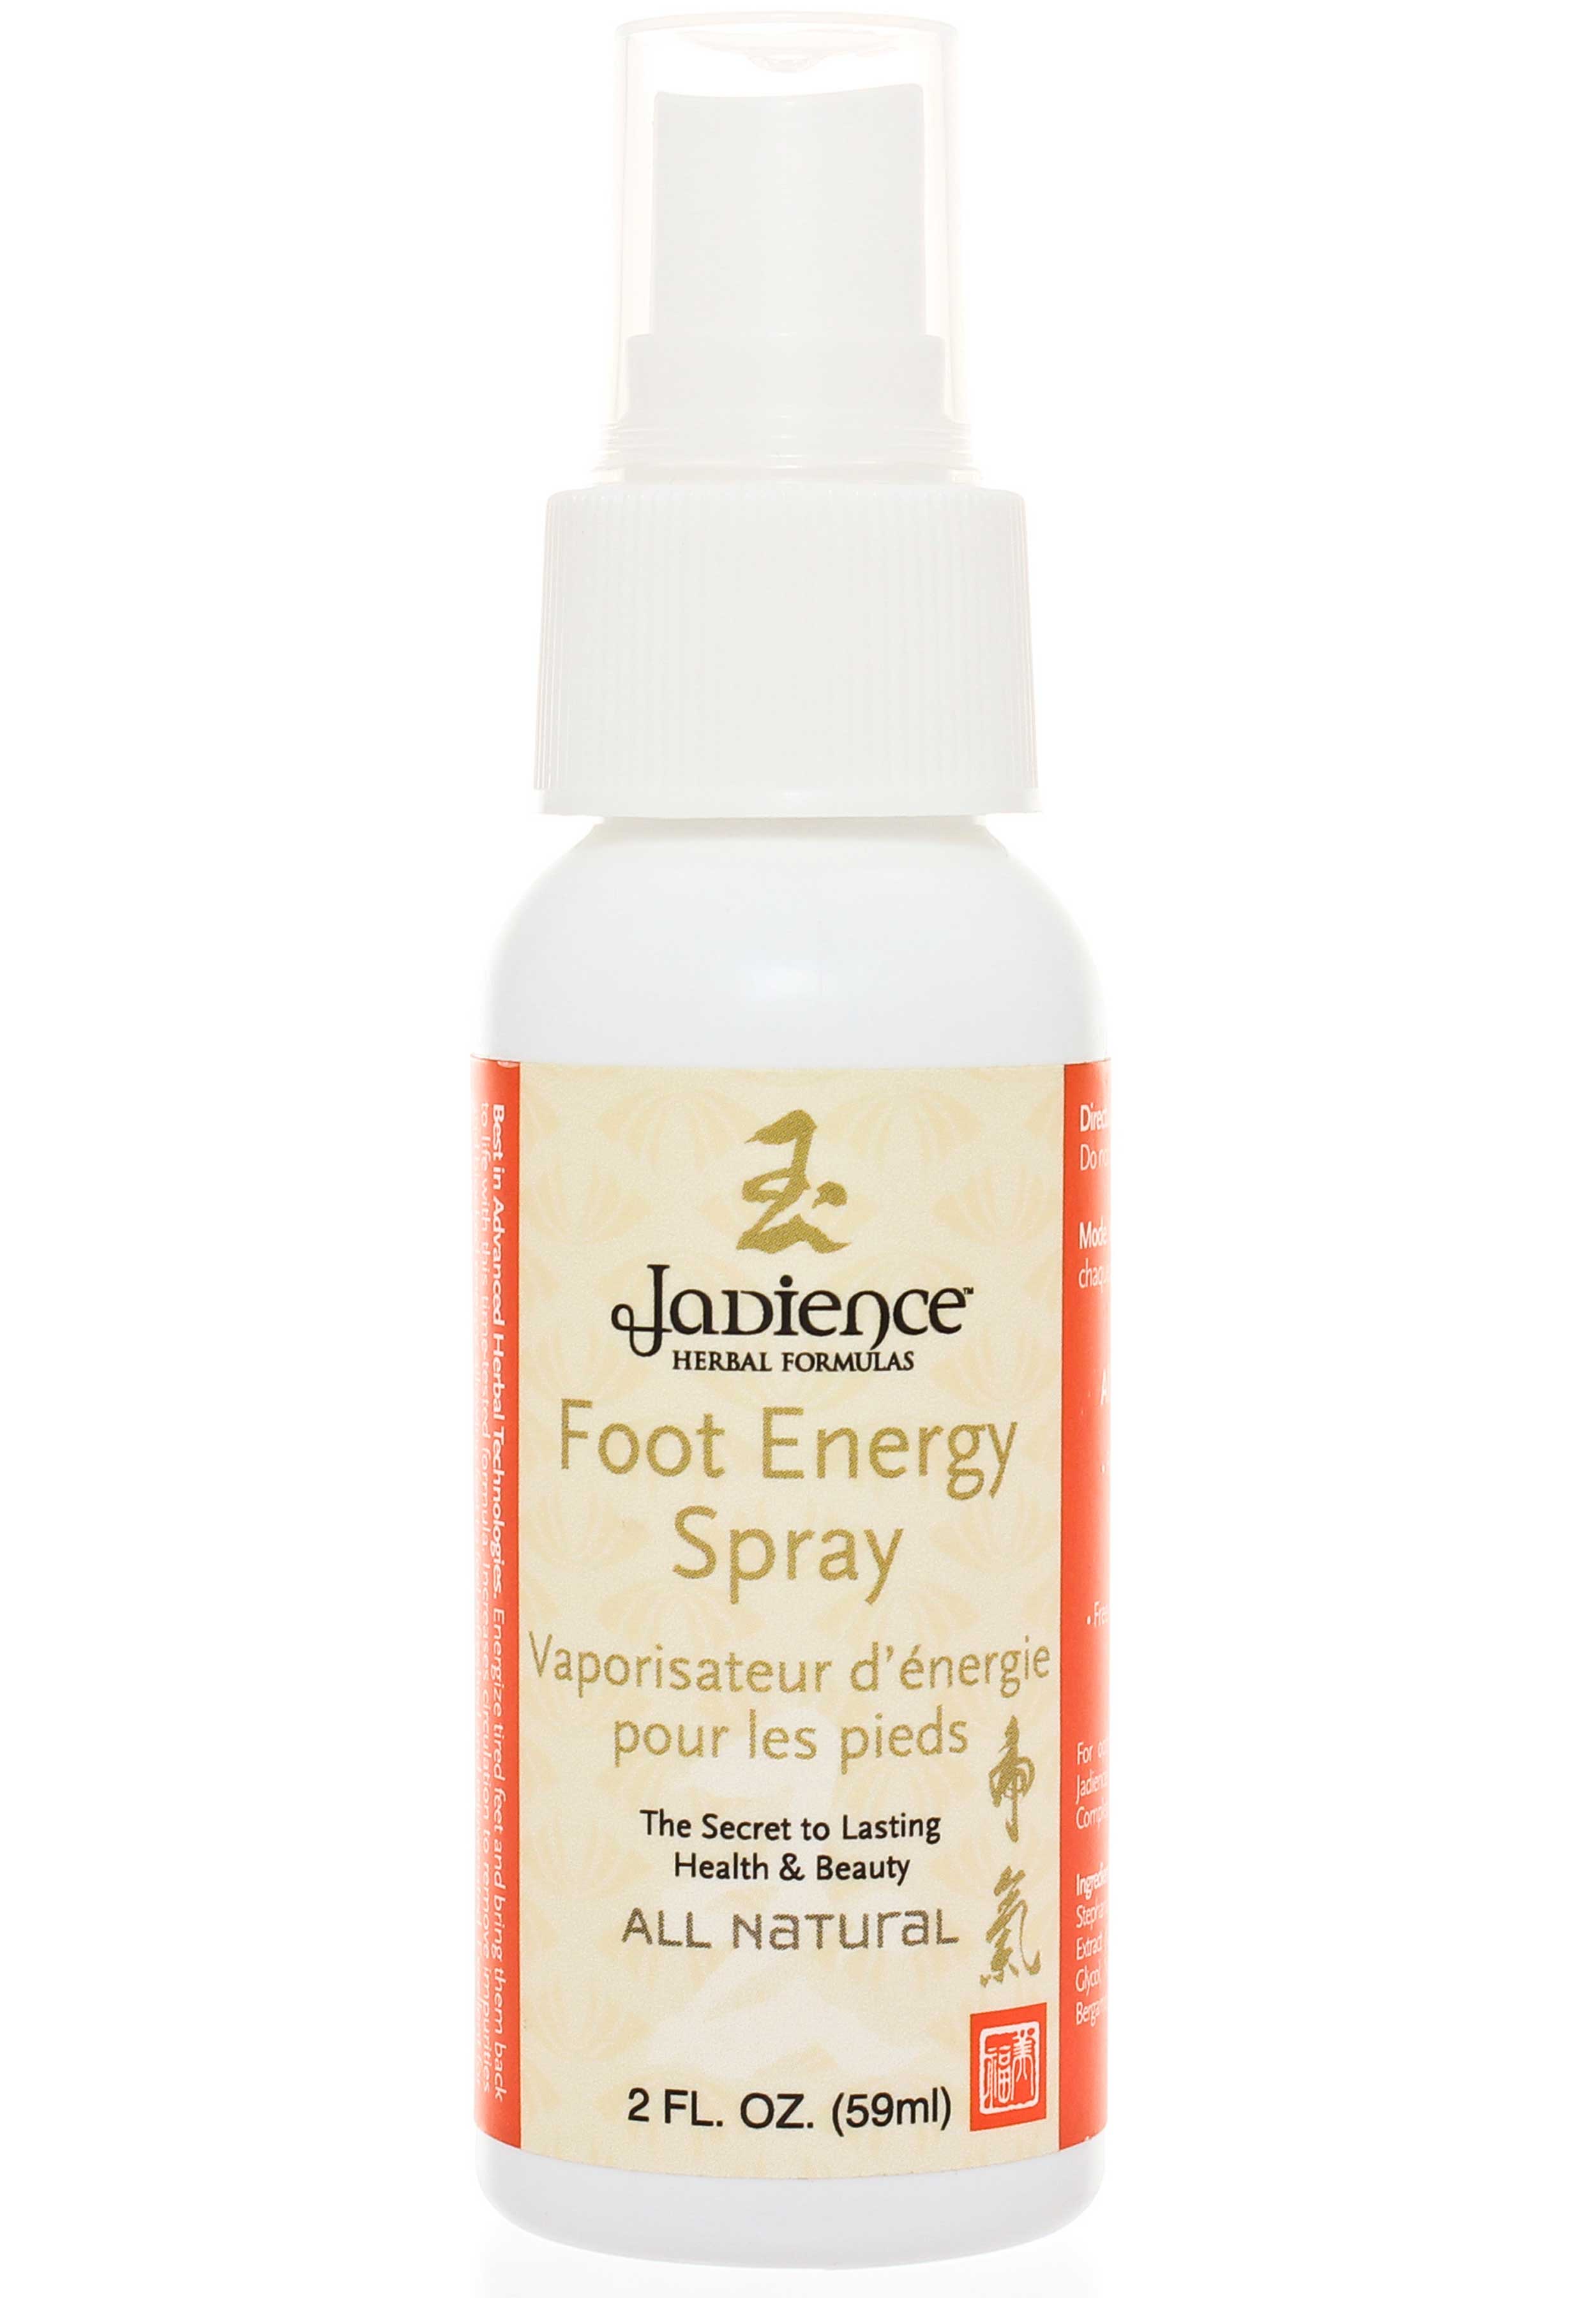 Jadience Herbal Formulas Foot Energy Spray